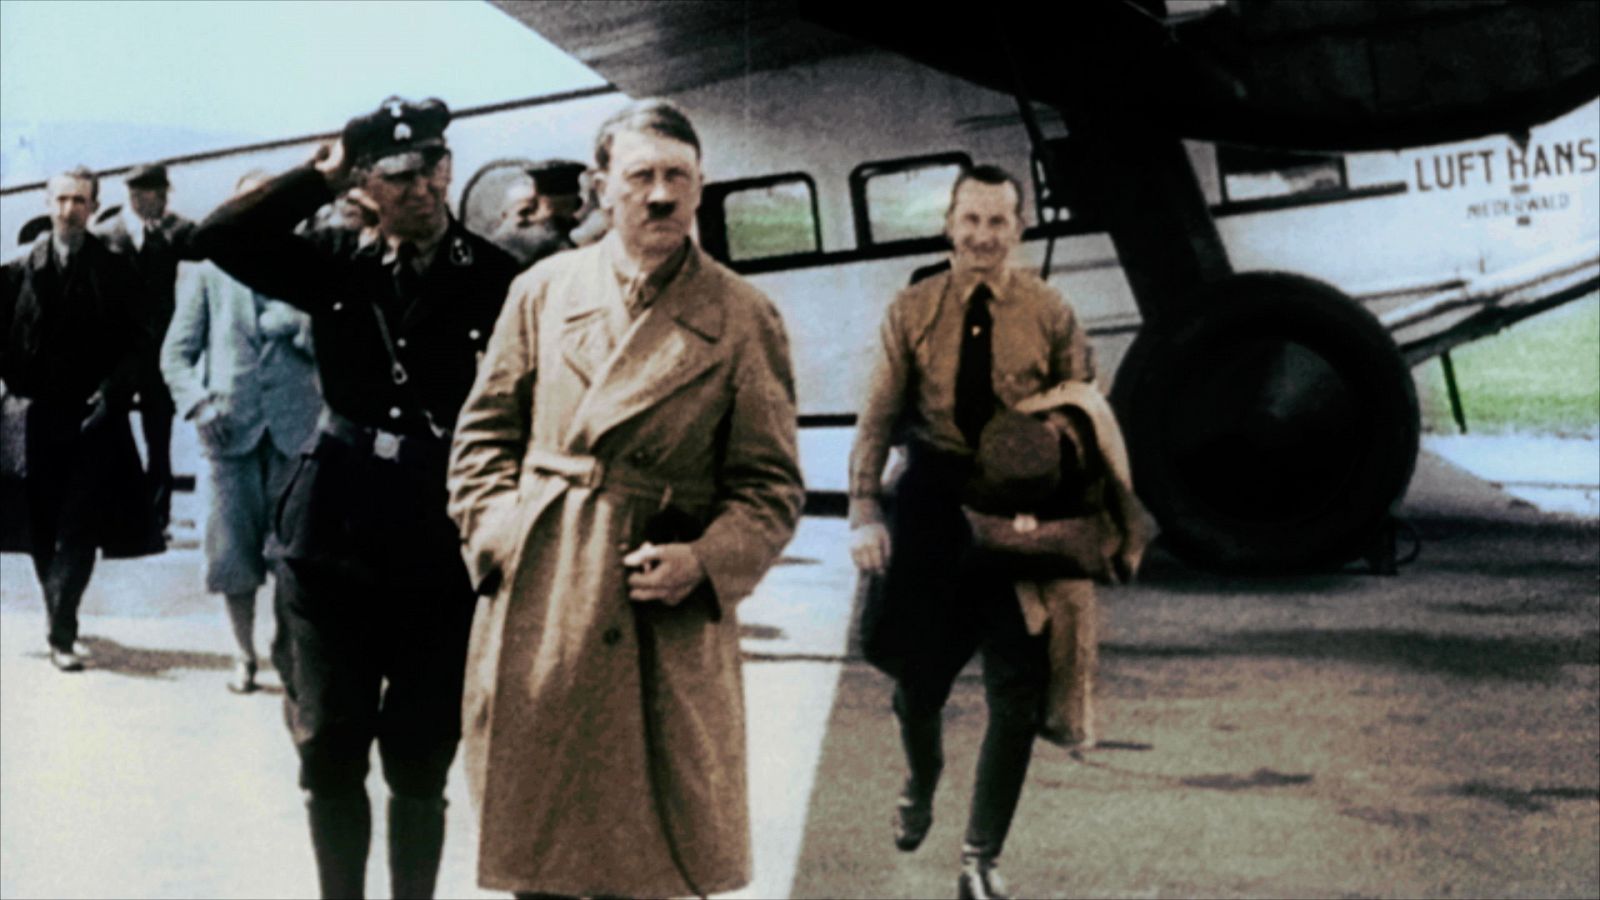 Apocalipsis: El ascenso de Hitler - Episodio 2: El Führer - Documental en RTVE